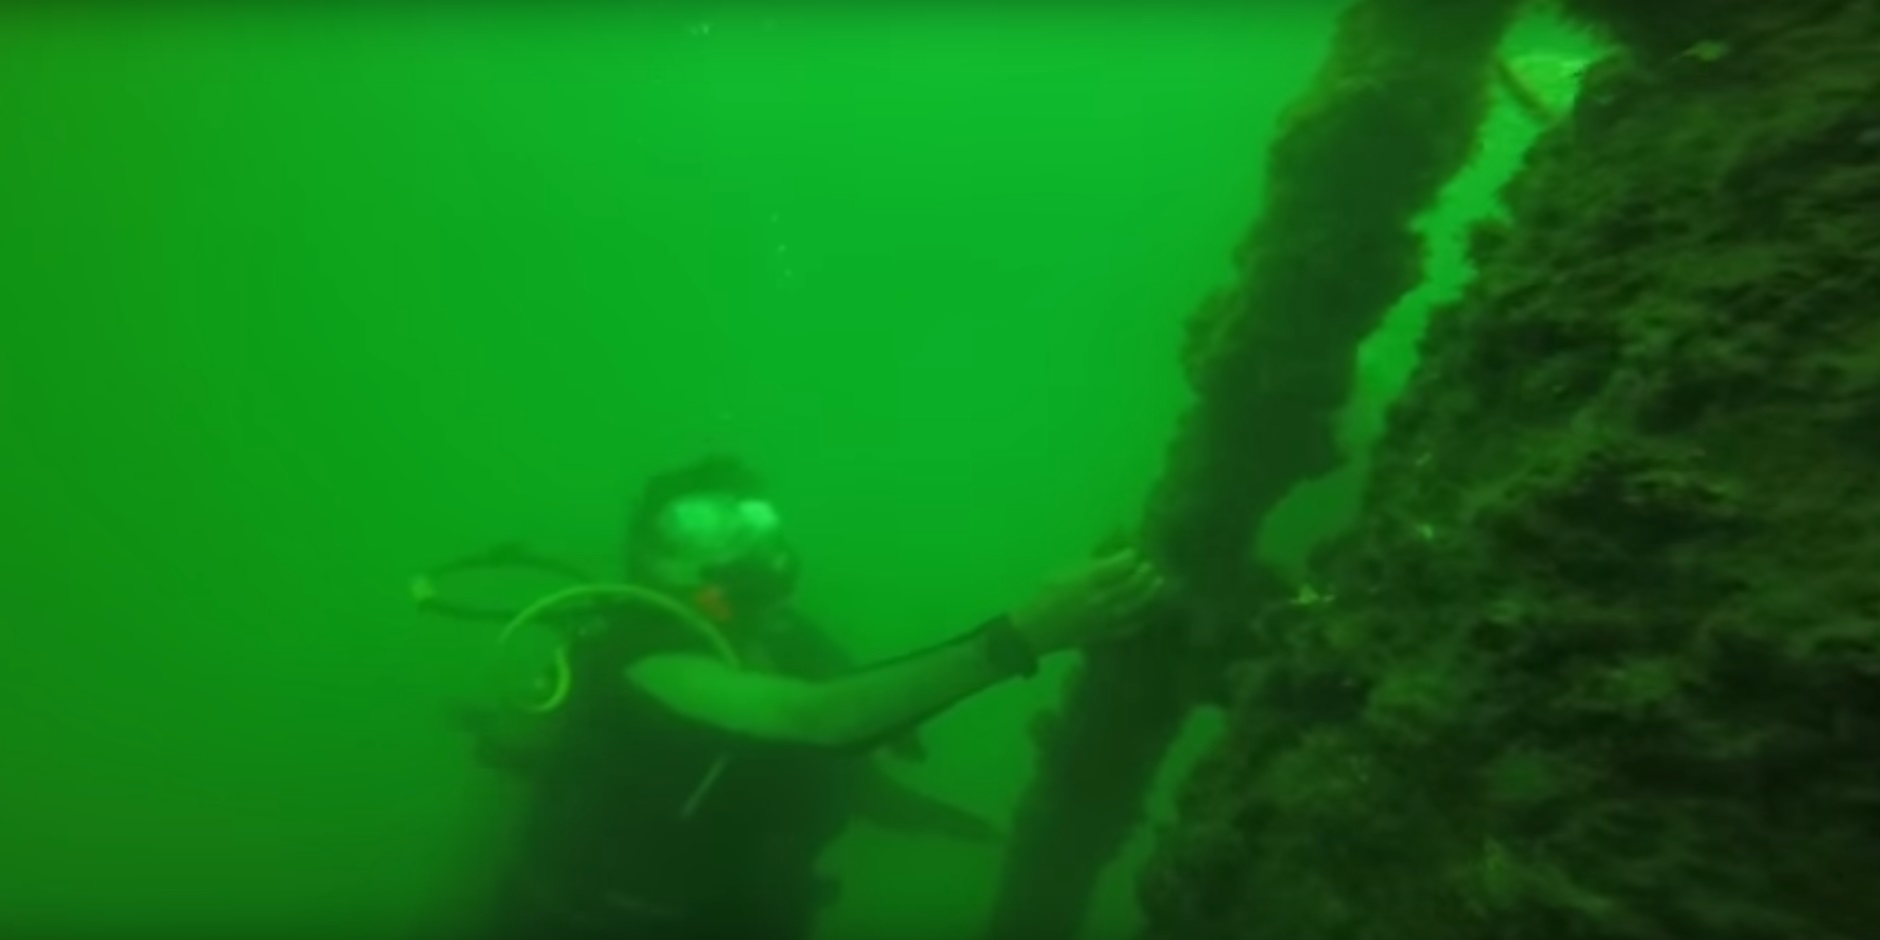 Nancy Rabalais scuba dives Gulf of Mexico dead zone